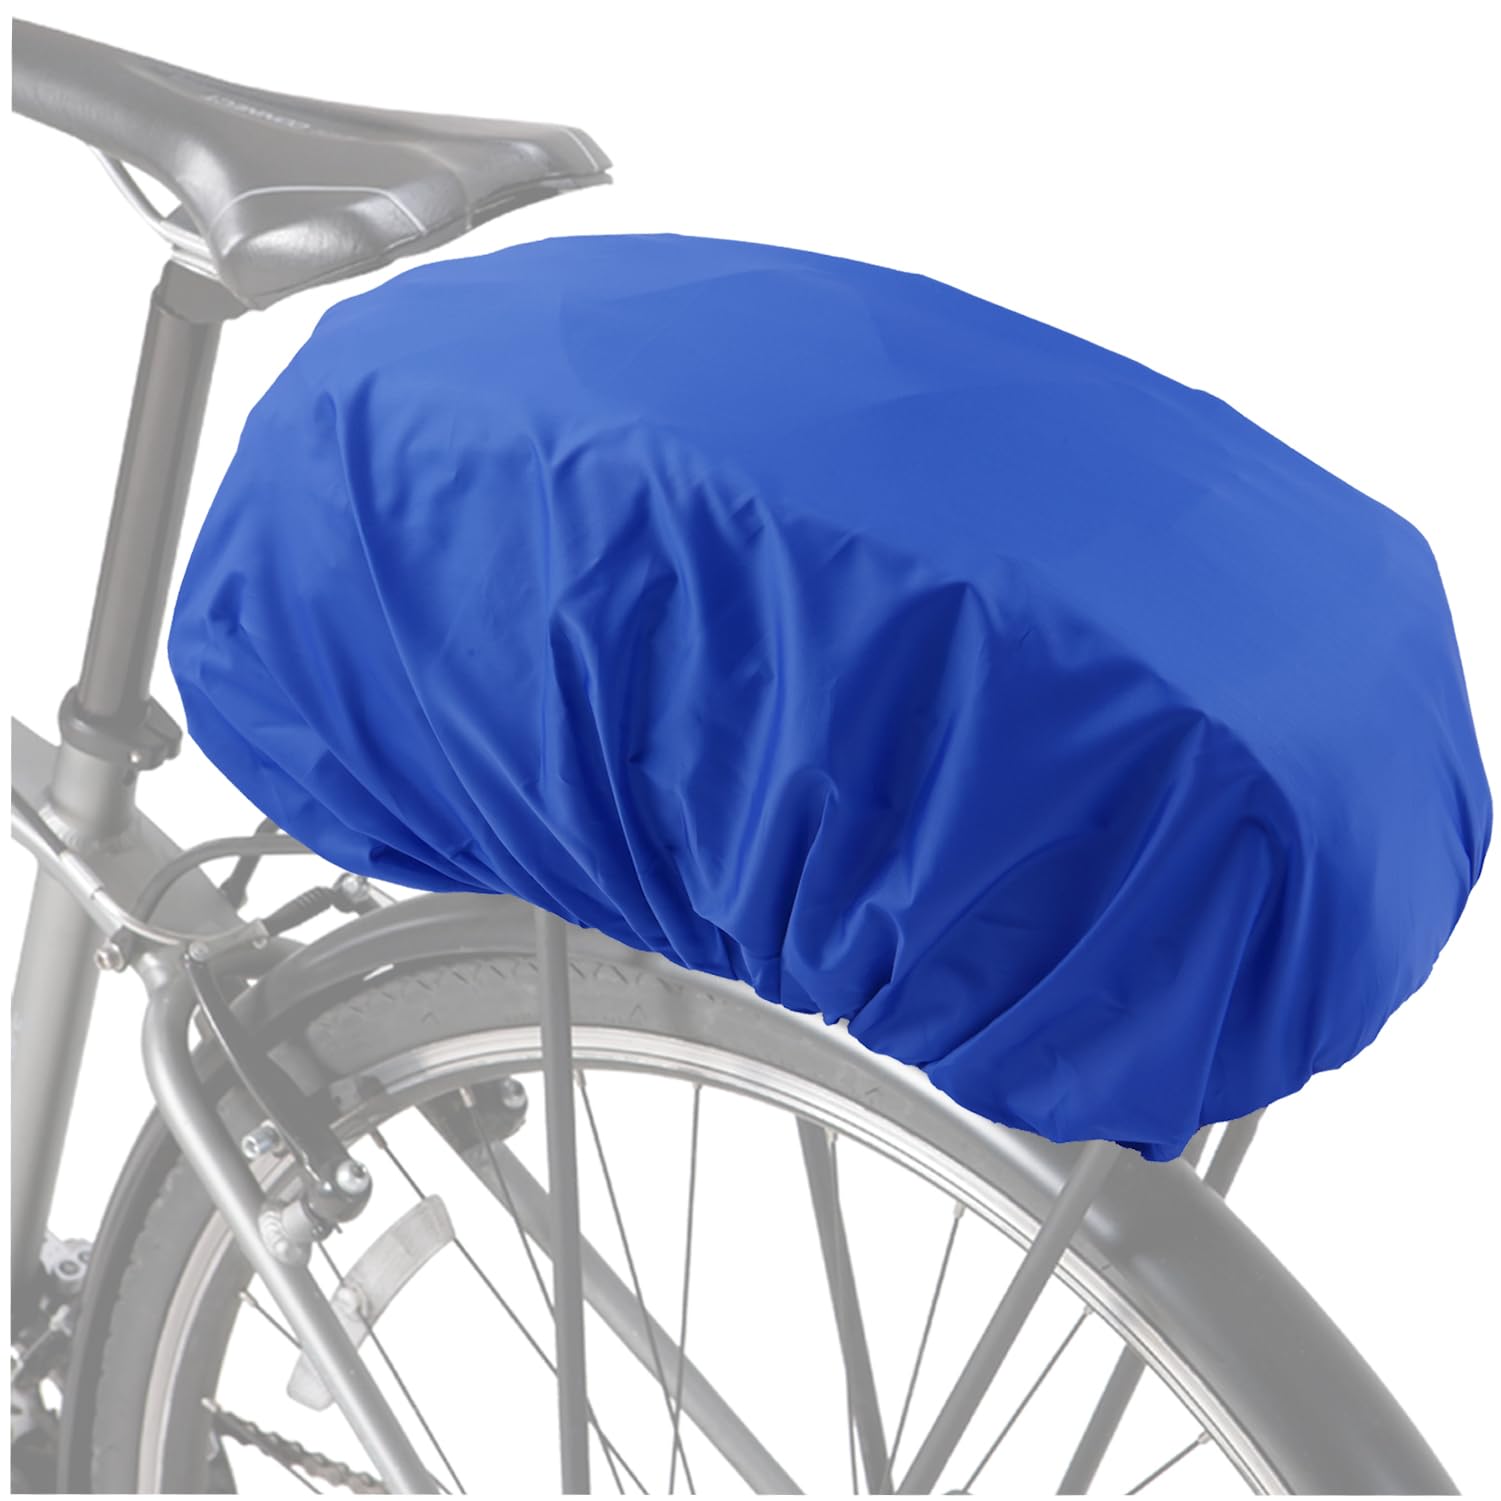 VAOLOAV 5L to 20L Regenschutz für Fahrradkorb Regenschutz Blau Fahrradkorb Regenschutz Abdeckung Überzug für Fahrradkorb Wasserabweisend Farradtasche Bikebasket Regenhaube Blau von VAOLOAV